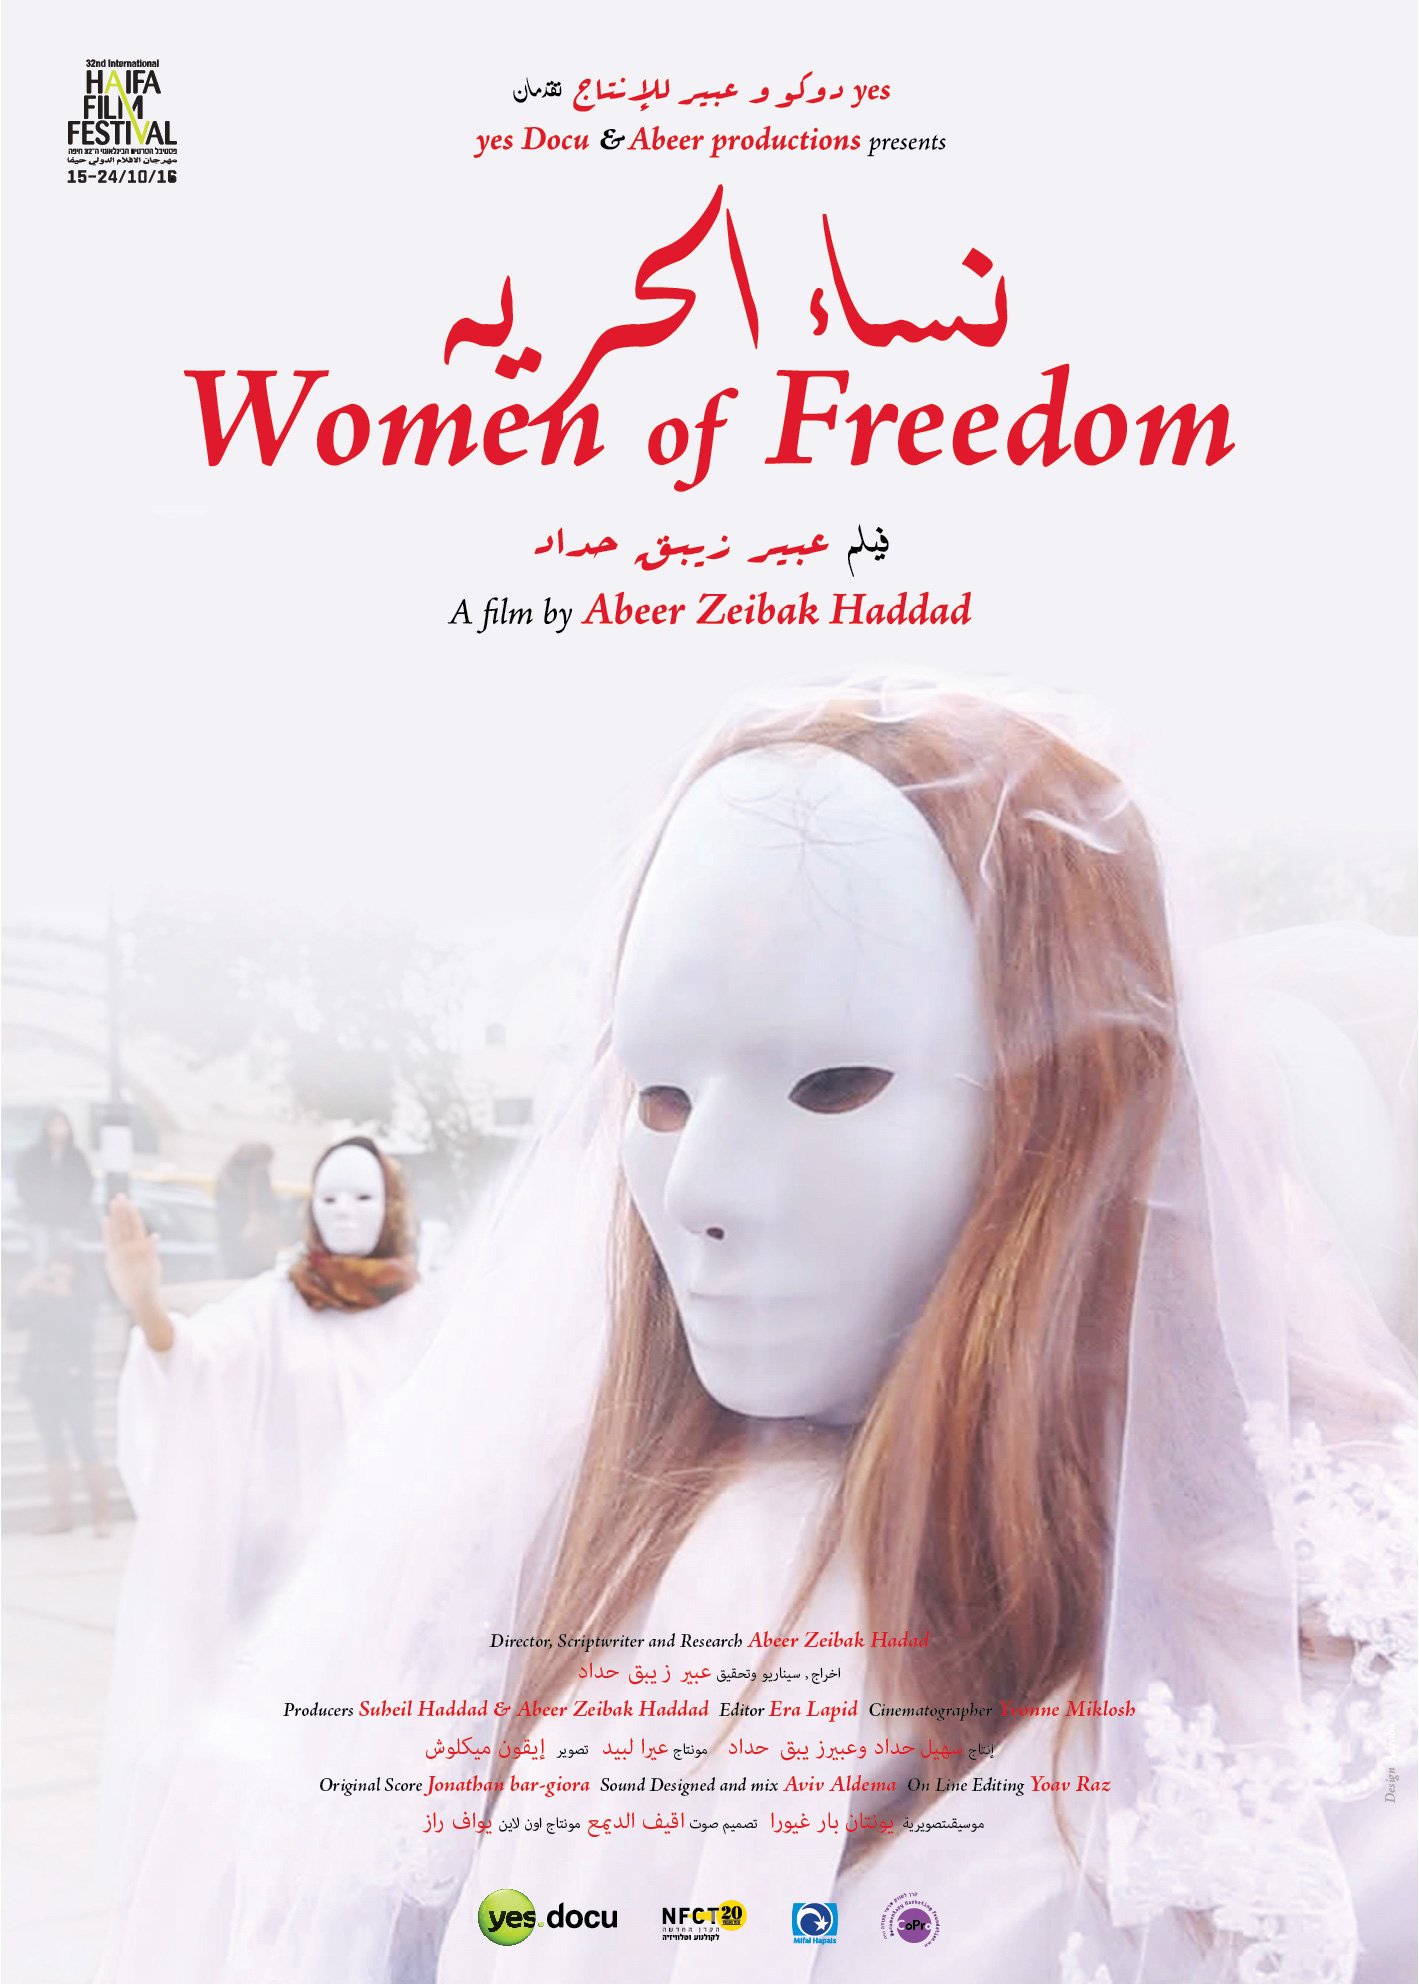  "نساء الحرية" للمخرجة عبير زيبق-حدّاد يحصد جائزة أفضل فيلم وثائقي-0